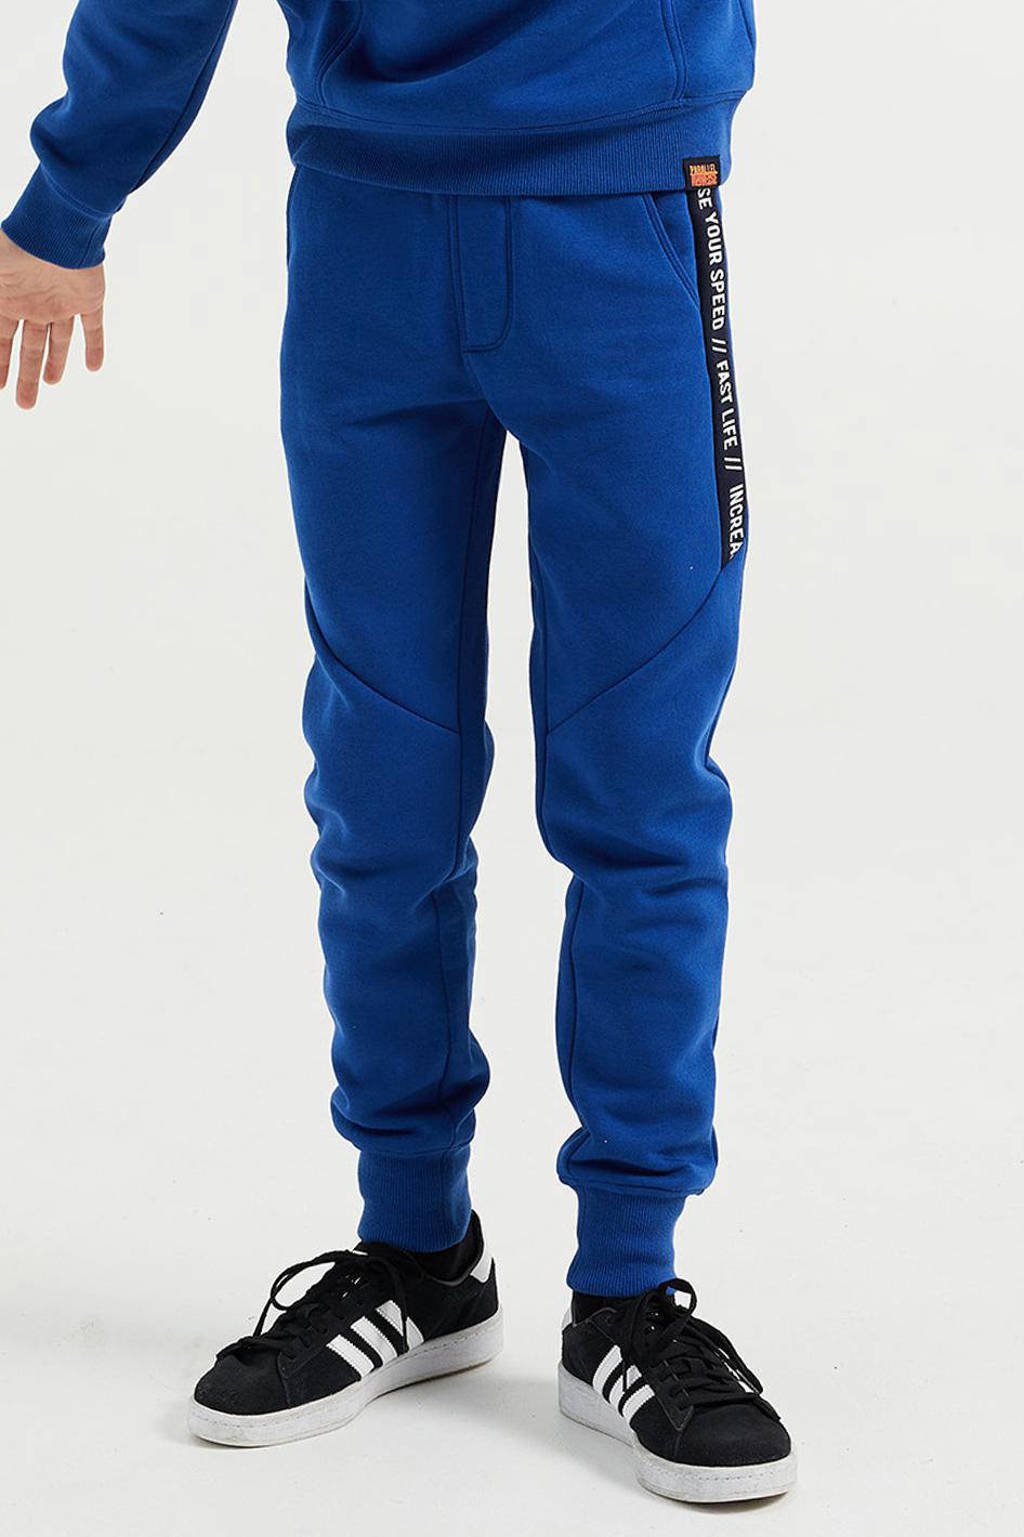 Blauwe jongens WE Fashion slim fit joggingbroek met regular waist, elastische tailleband met koord en tekst print